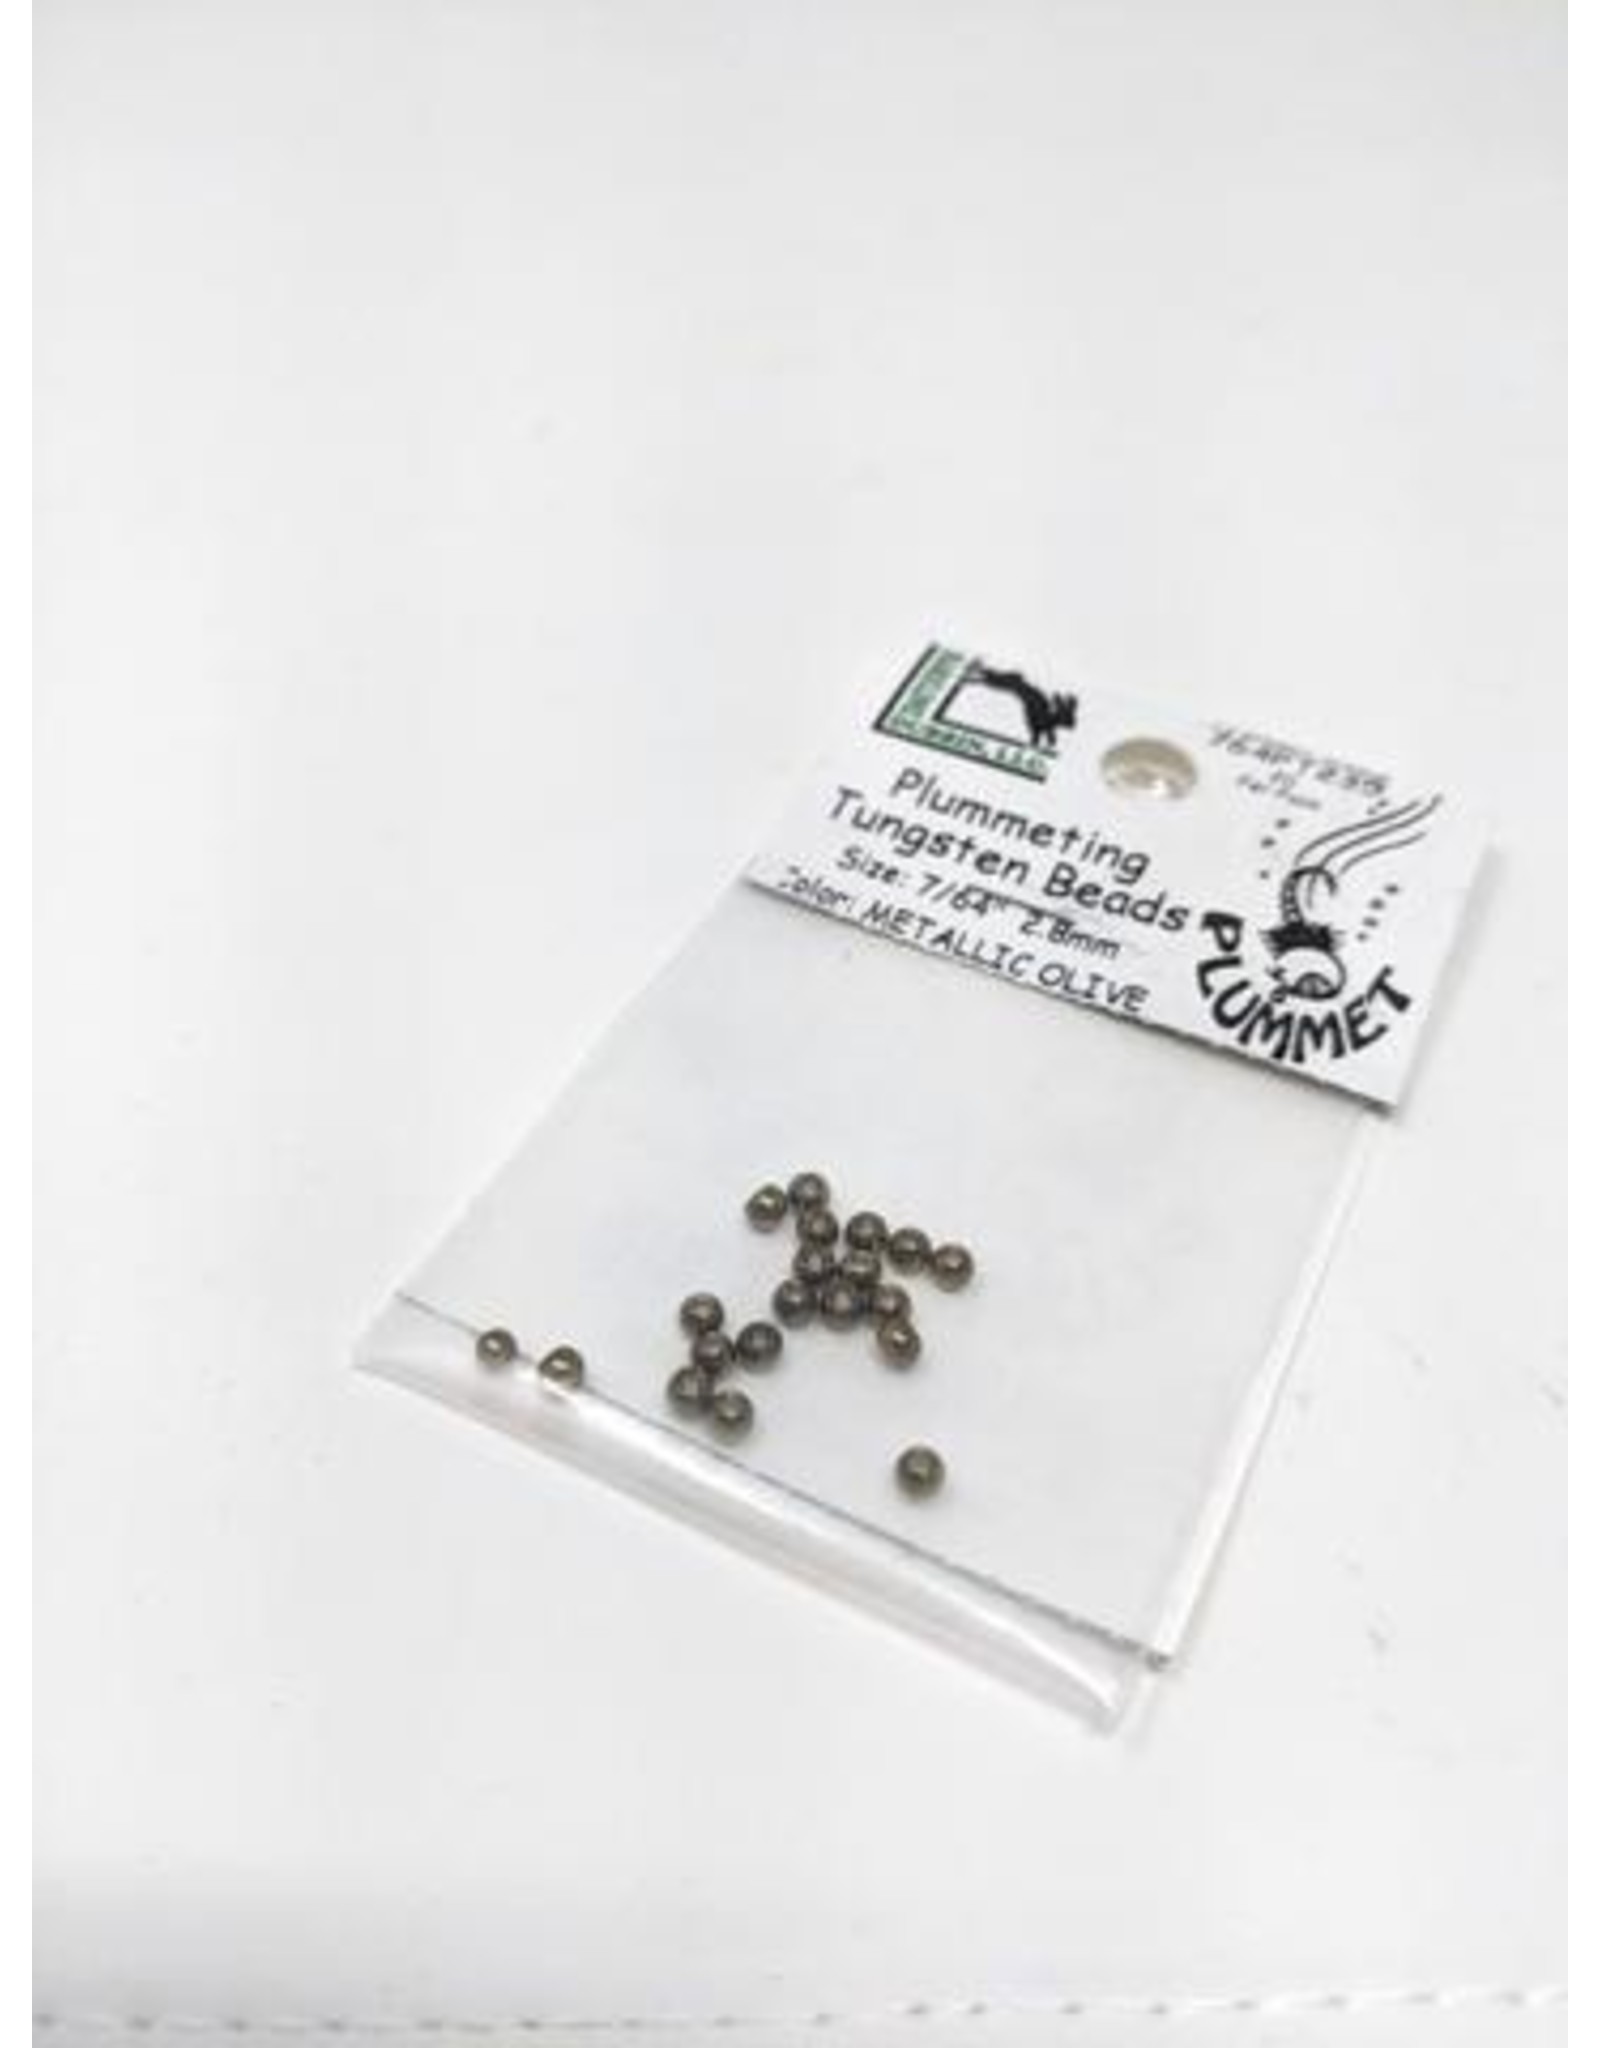 HARELINE Plummeting Tungsten Beads